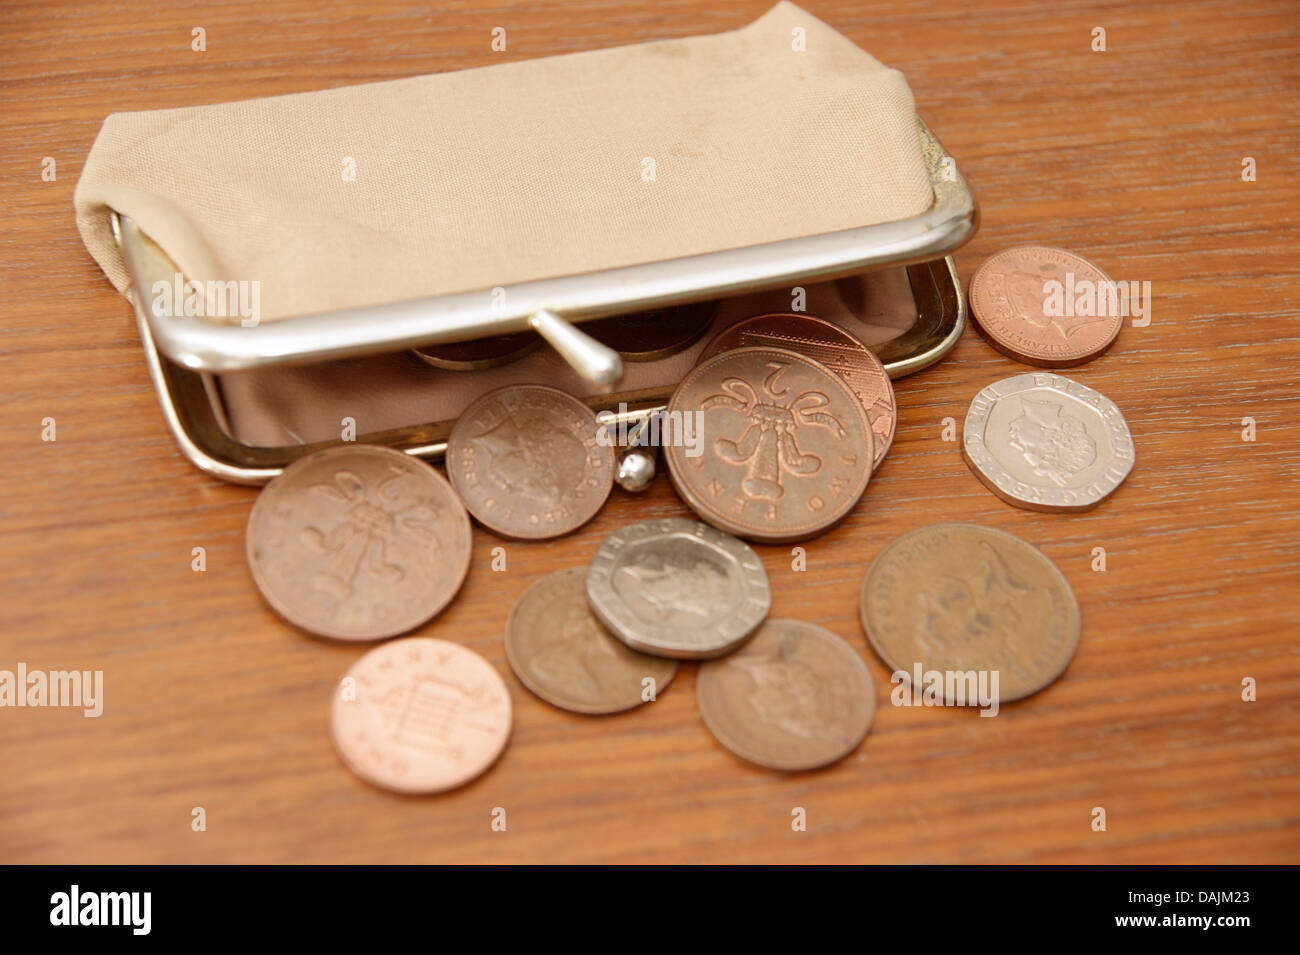 Una bolsa llena de monedas (British sterling dinero) derramándose sobre una mesa Foto de stock